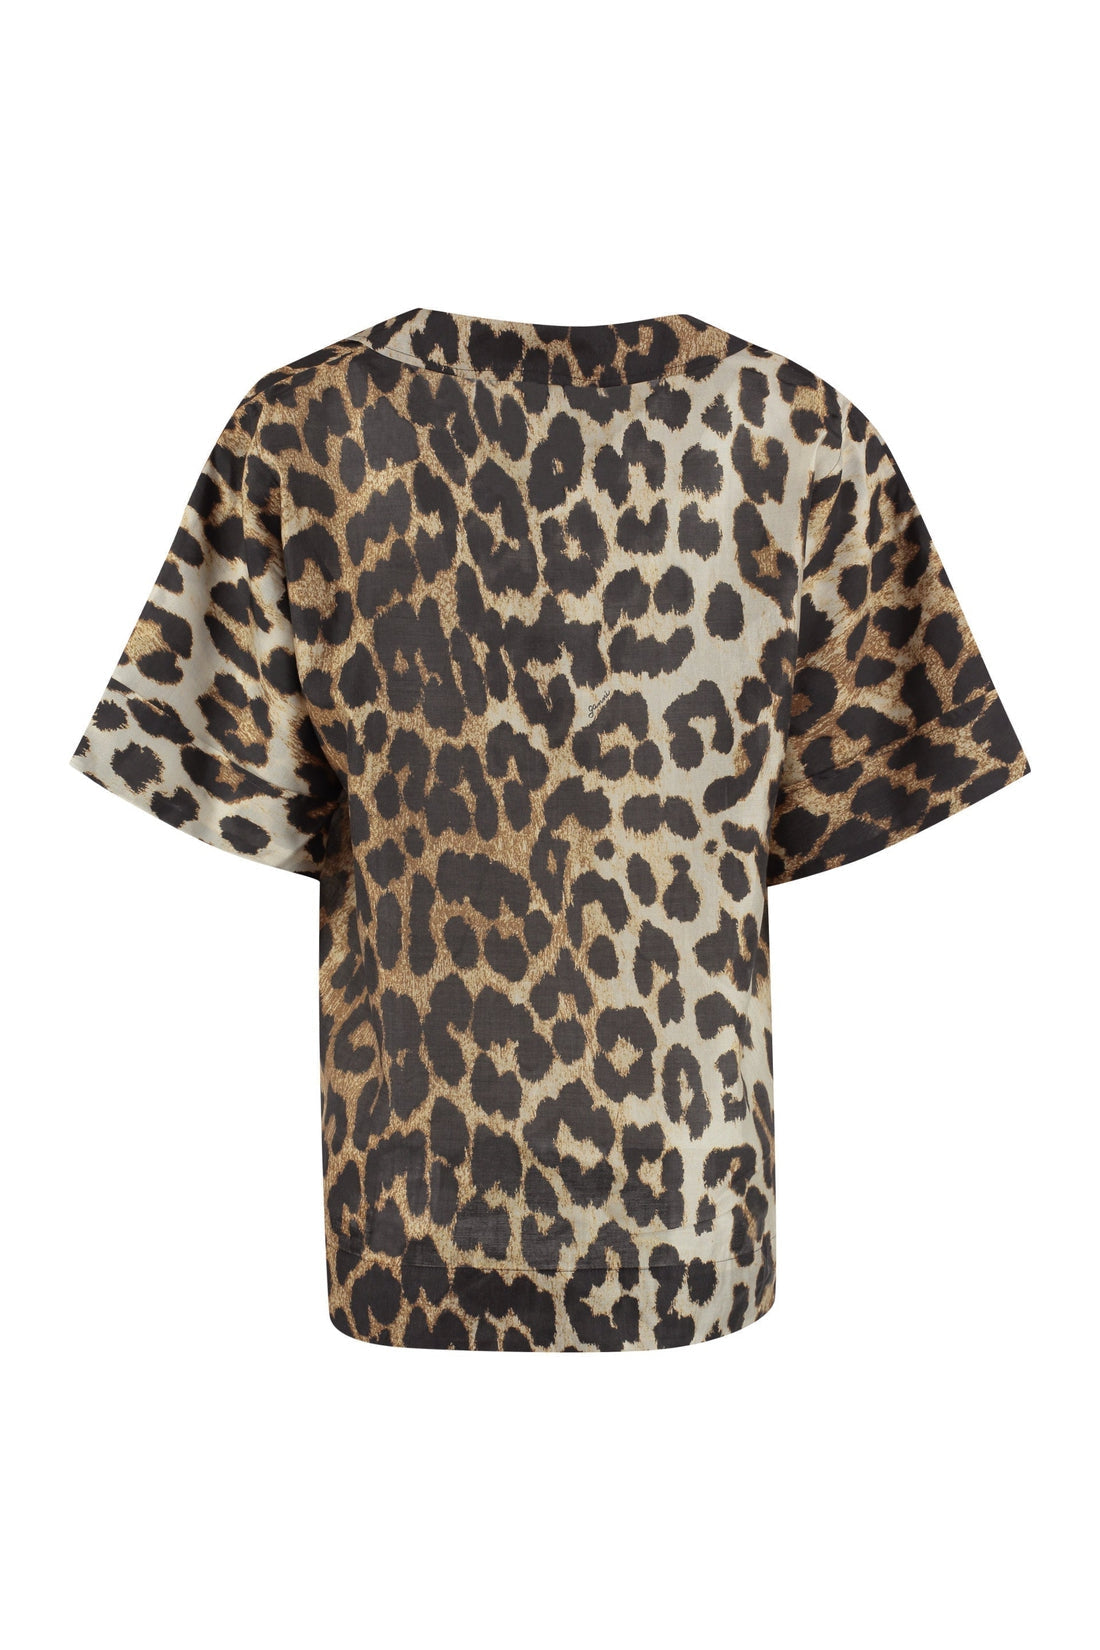 GANNI-OUTLET-SALE-Leopard print shirt-ARCHIVIST